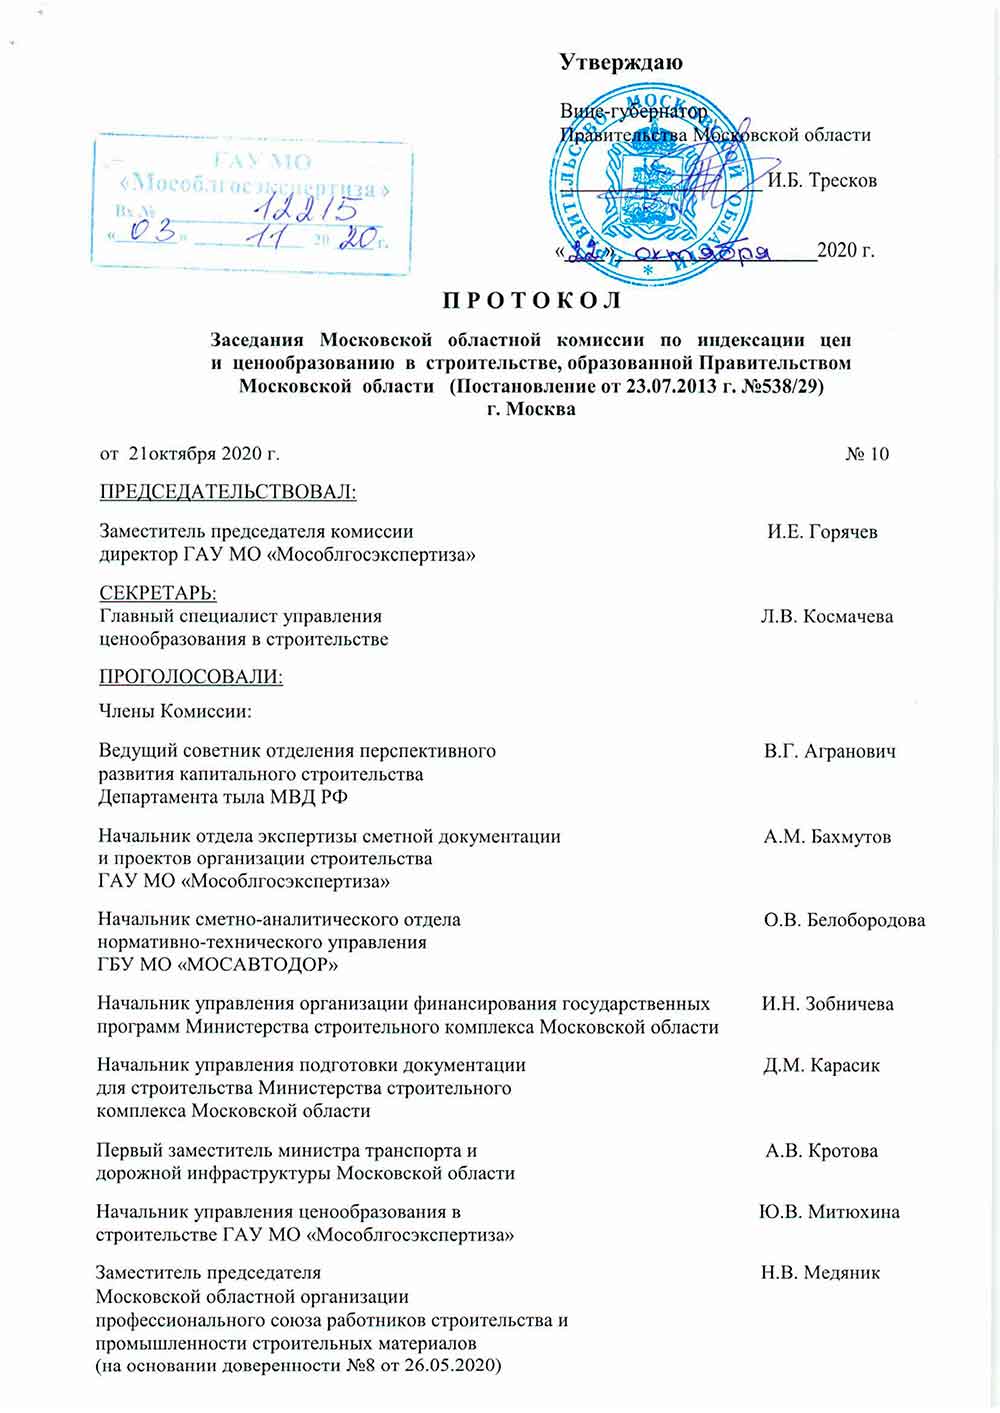 Протокол Мособлгосэкспертизы №10 от 21.10.2020 года